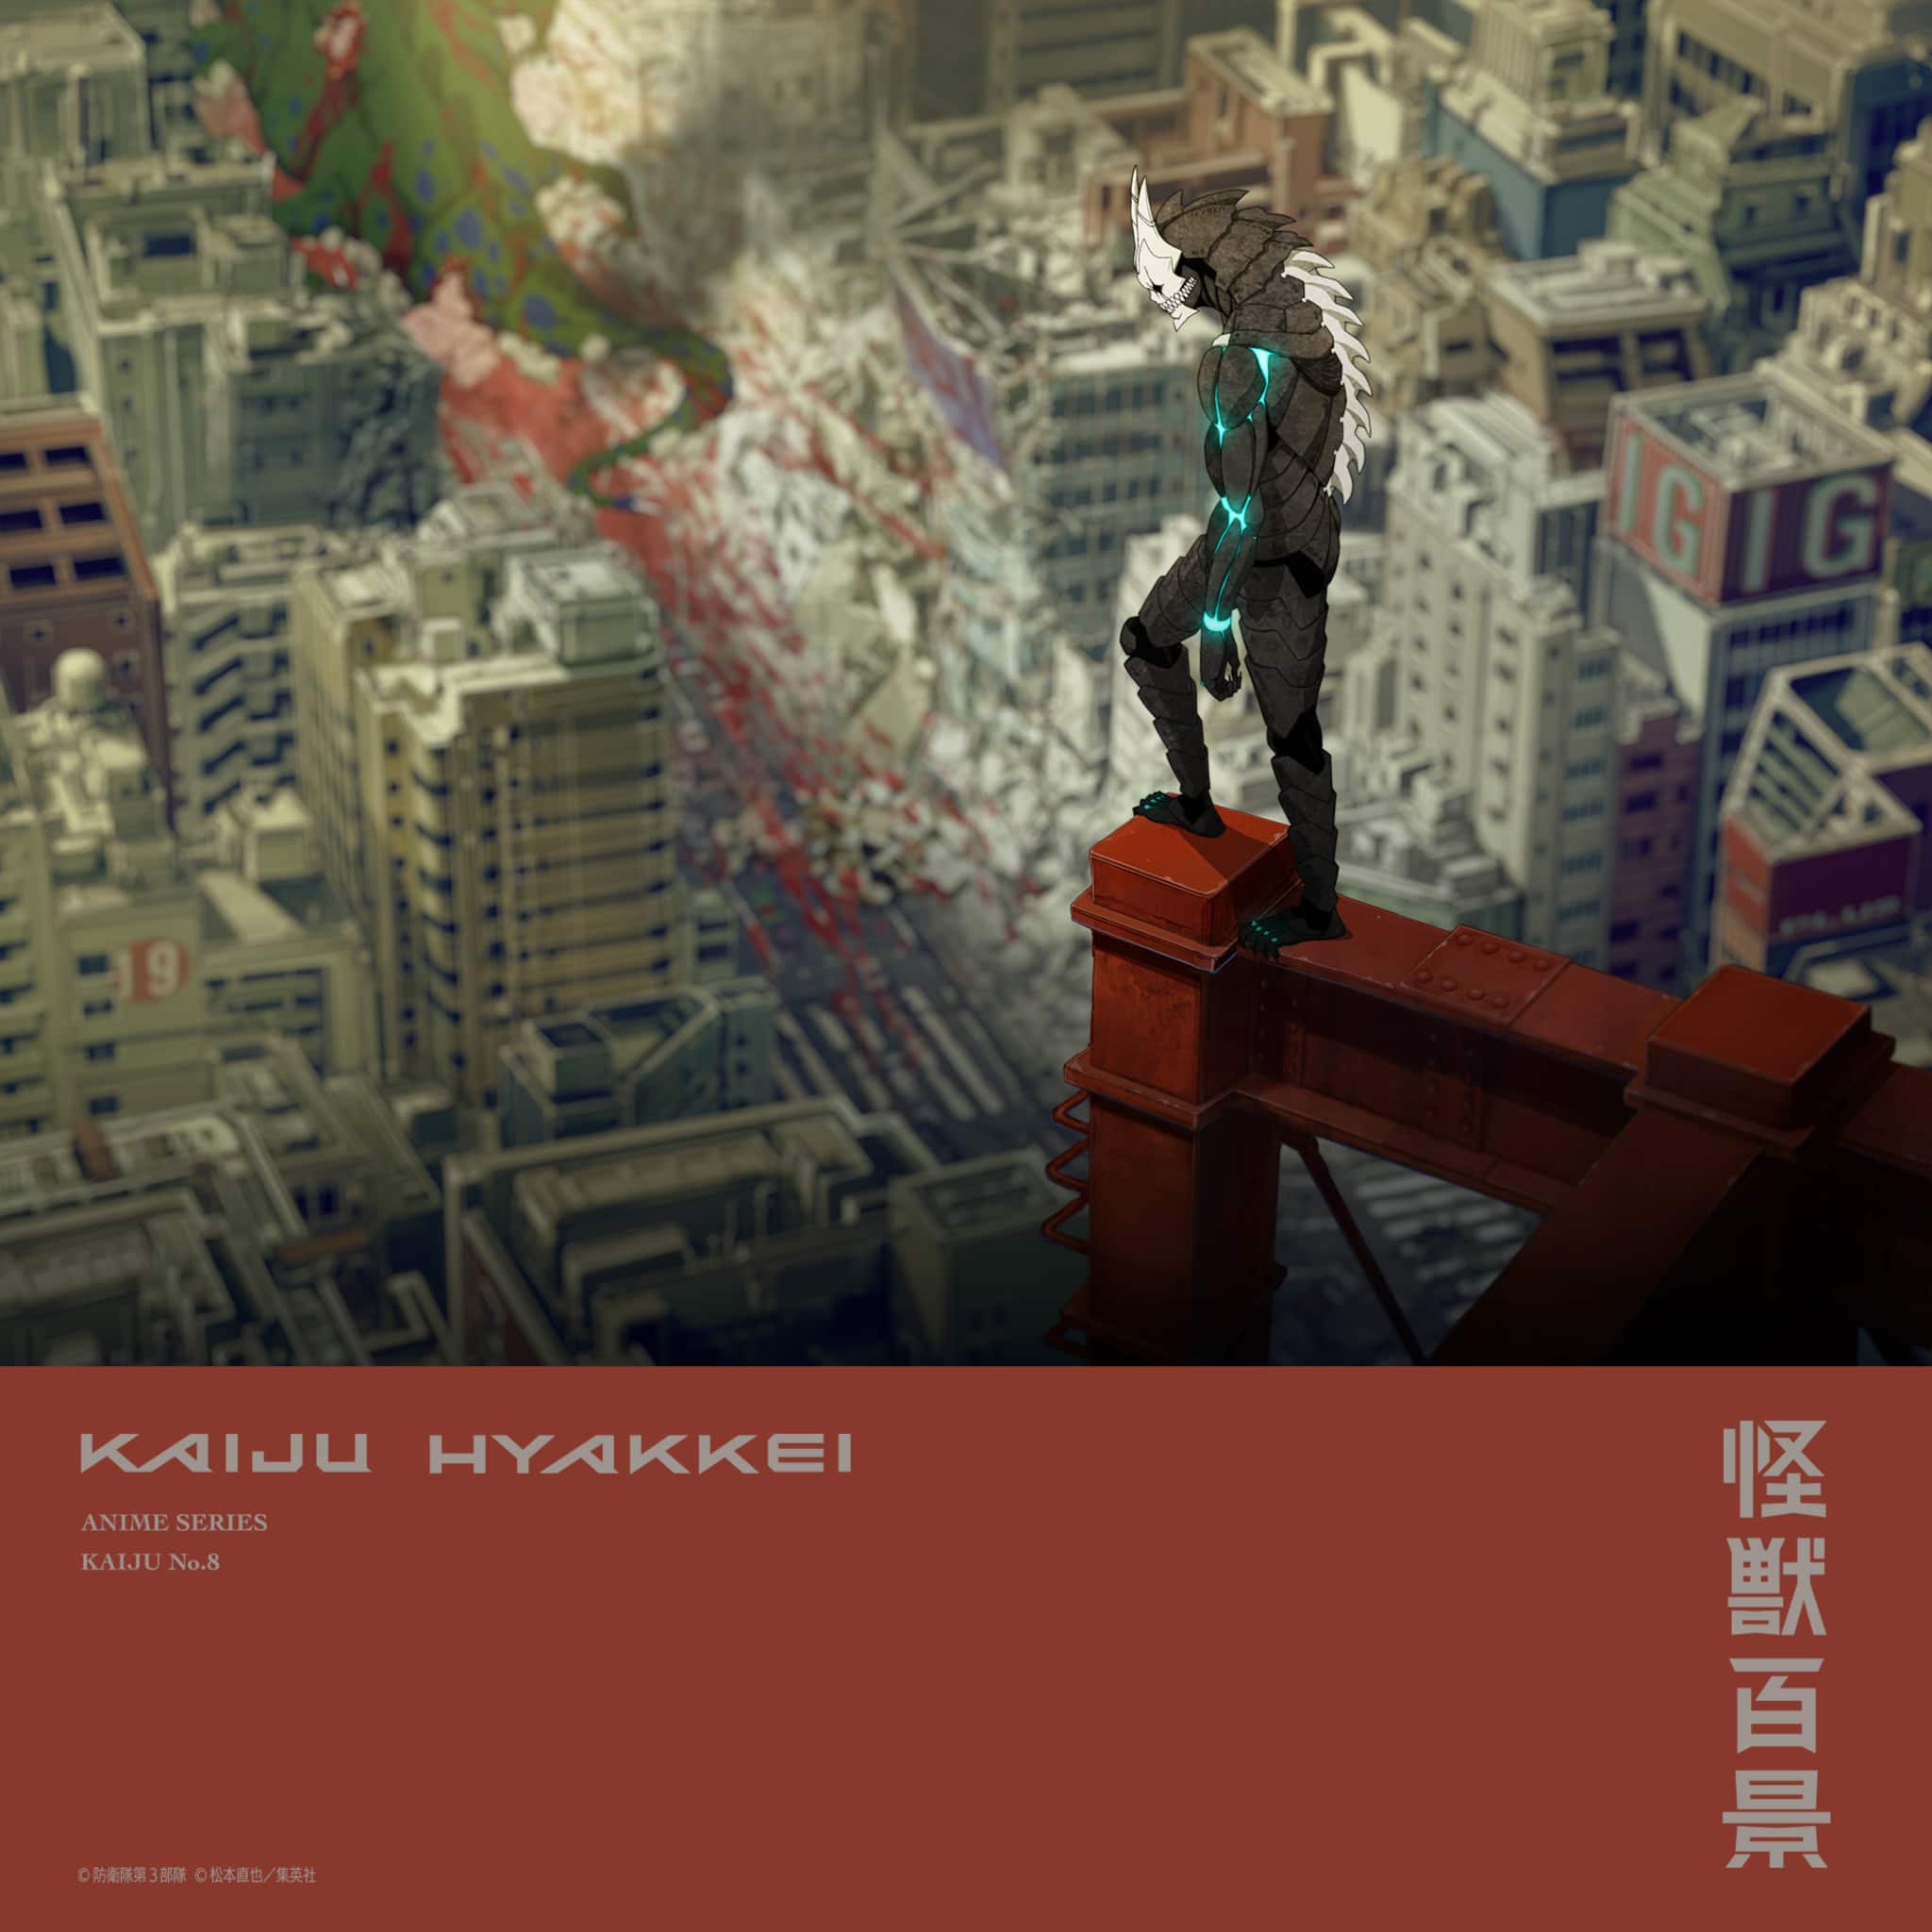 Quatrième visuel teaser pour l'anime Kaiju N°8